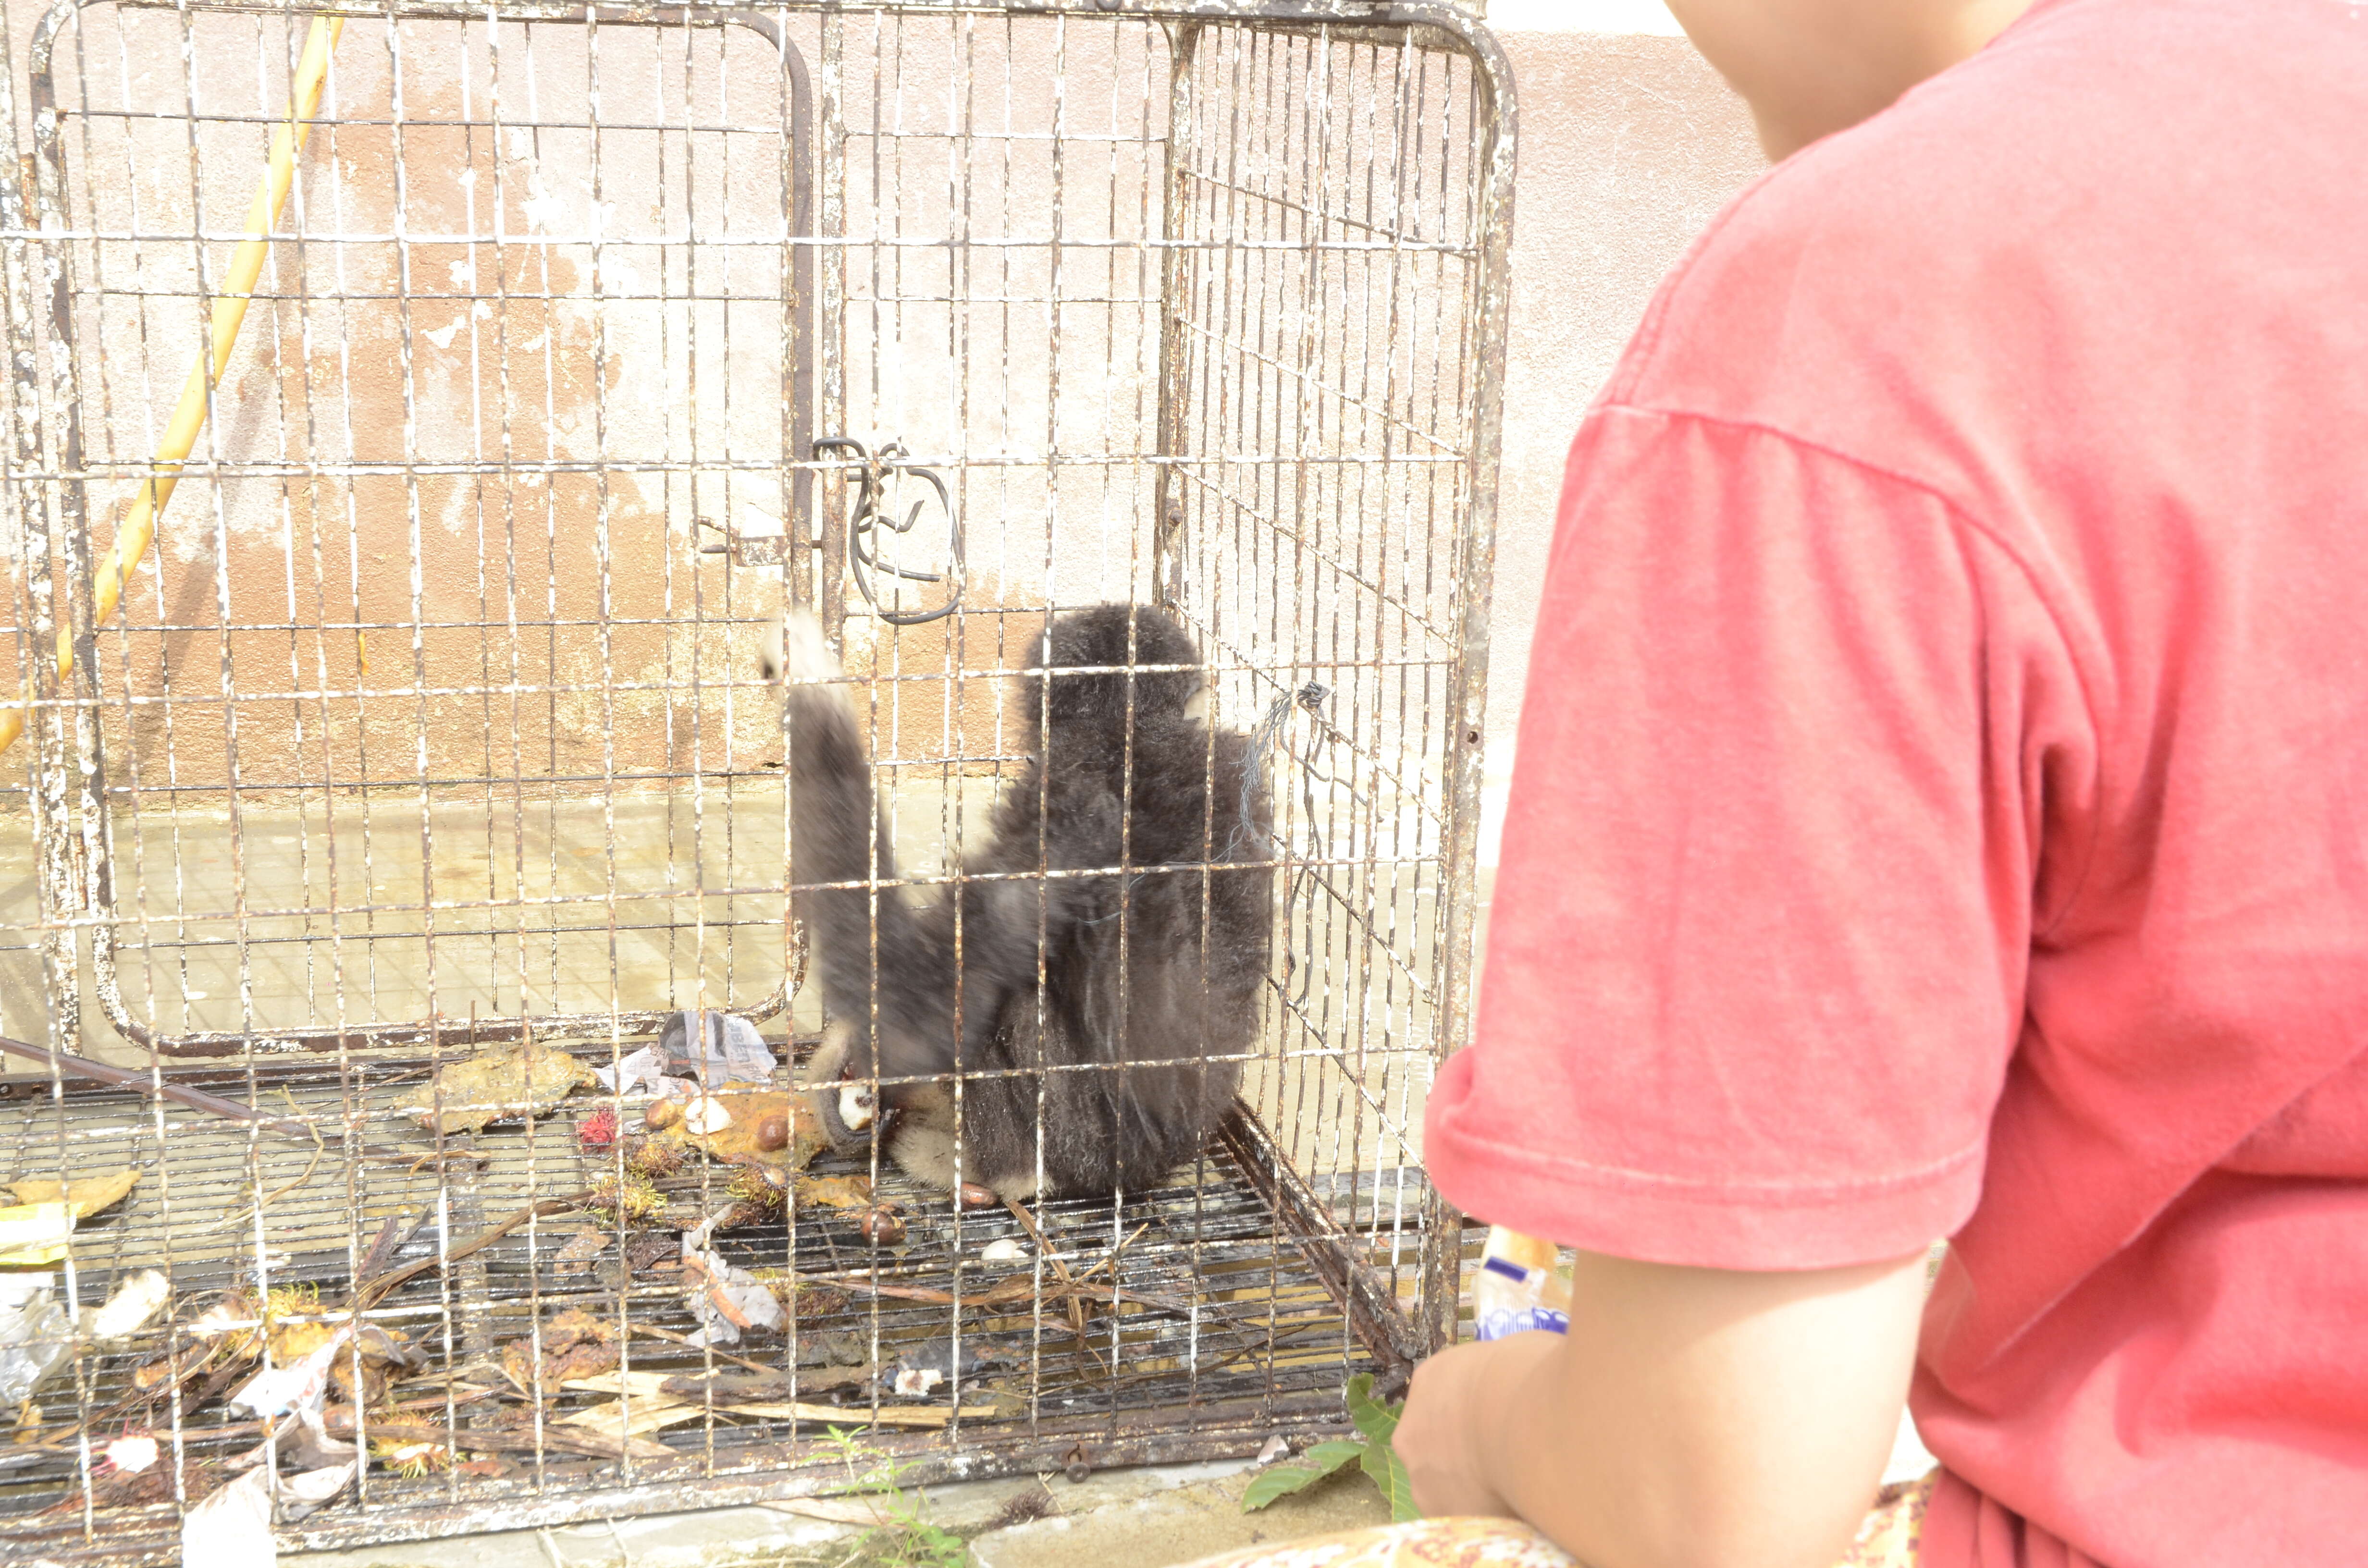 Wild gibbon locked up in tiny cage